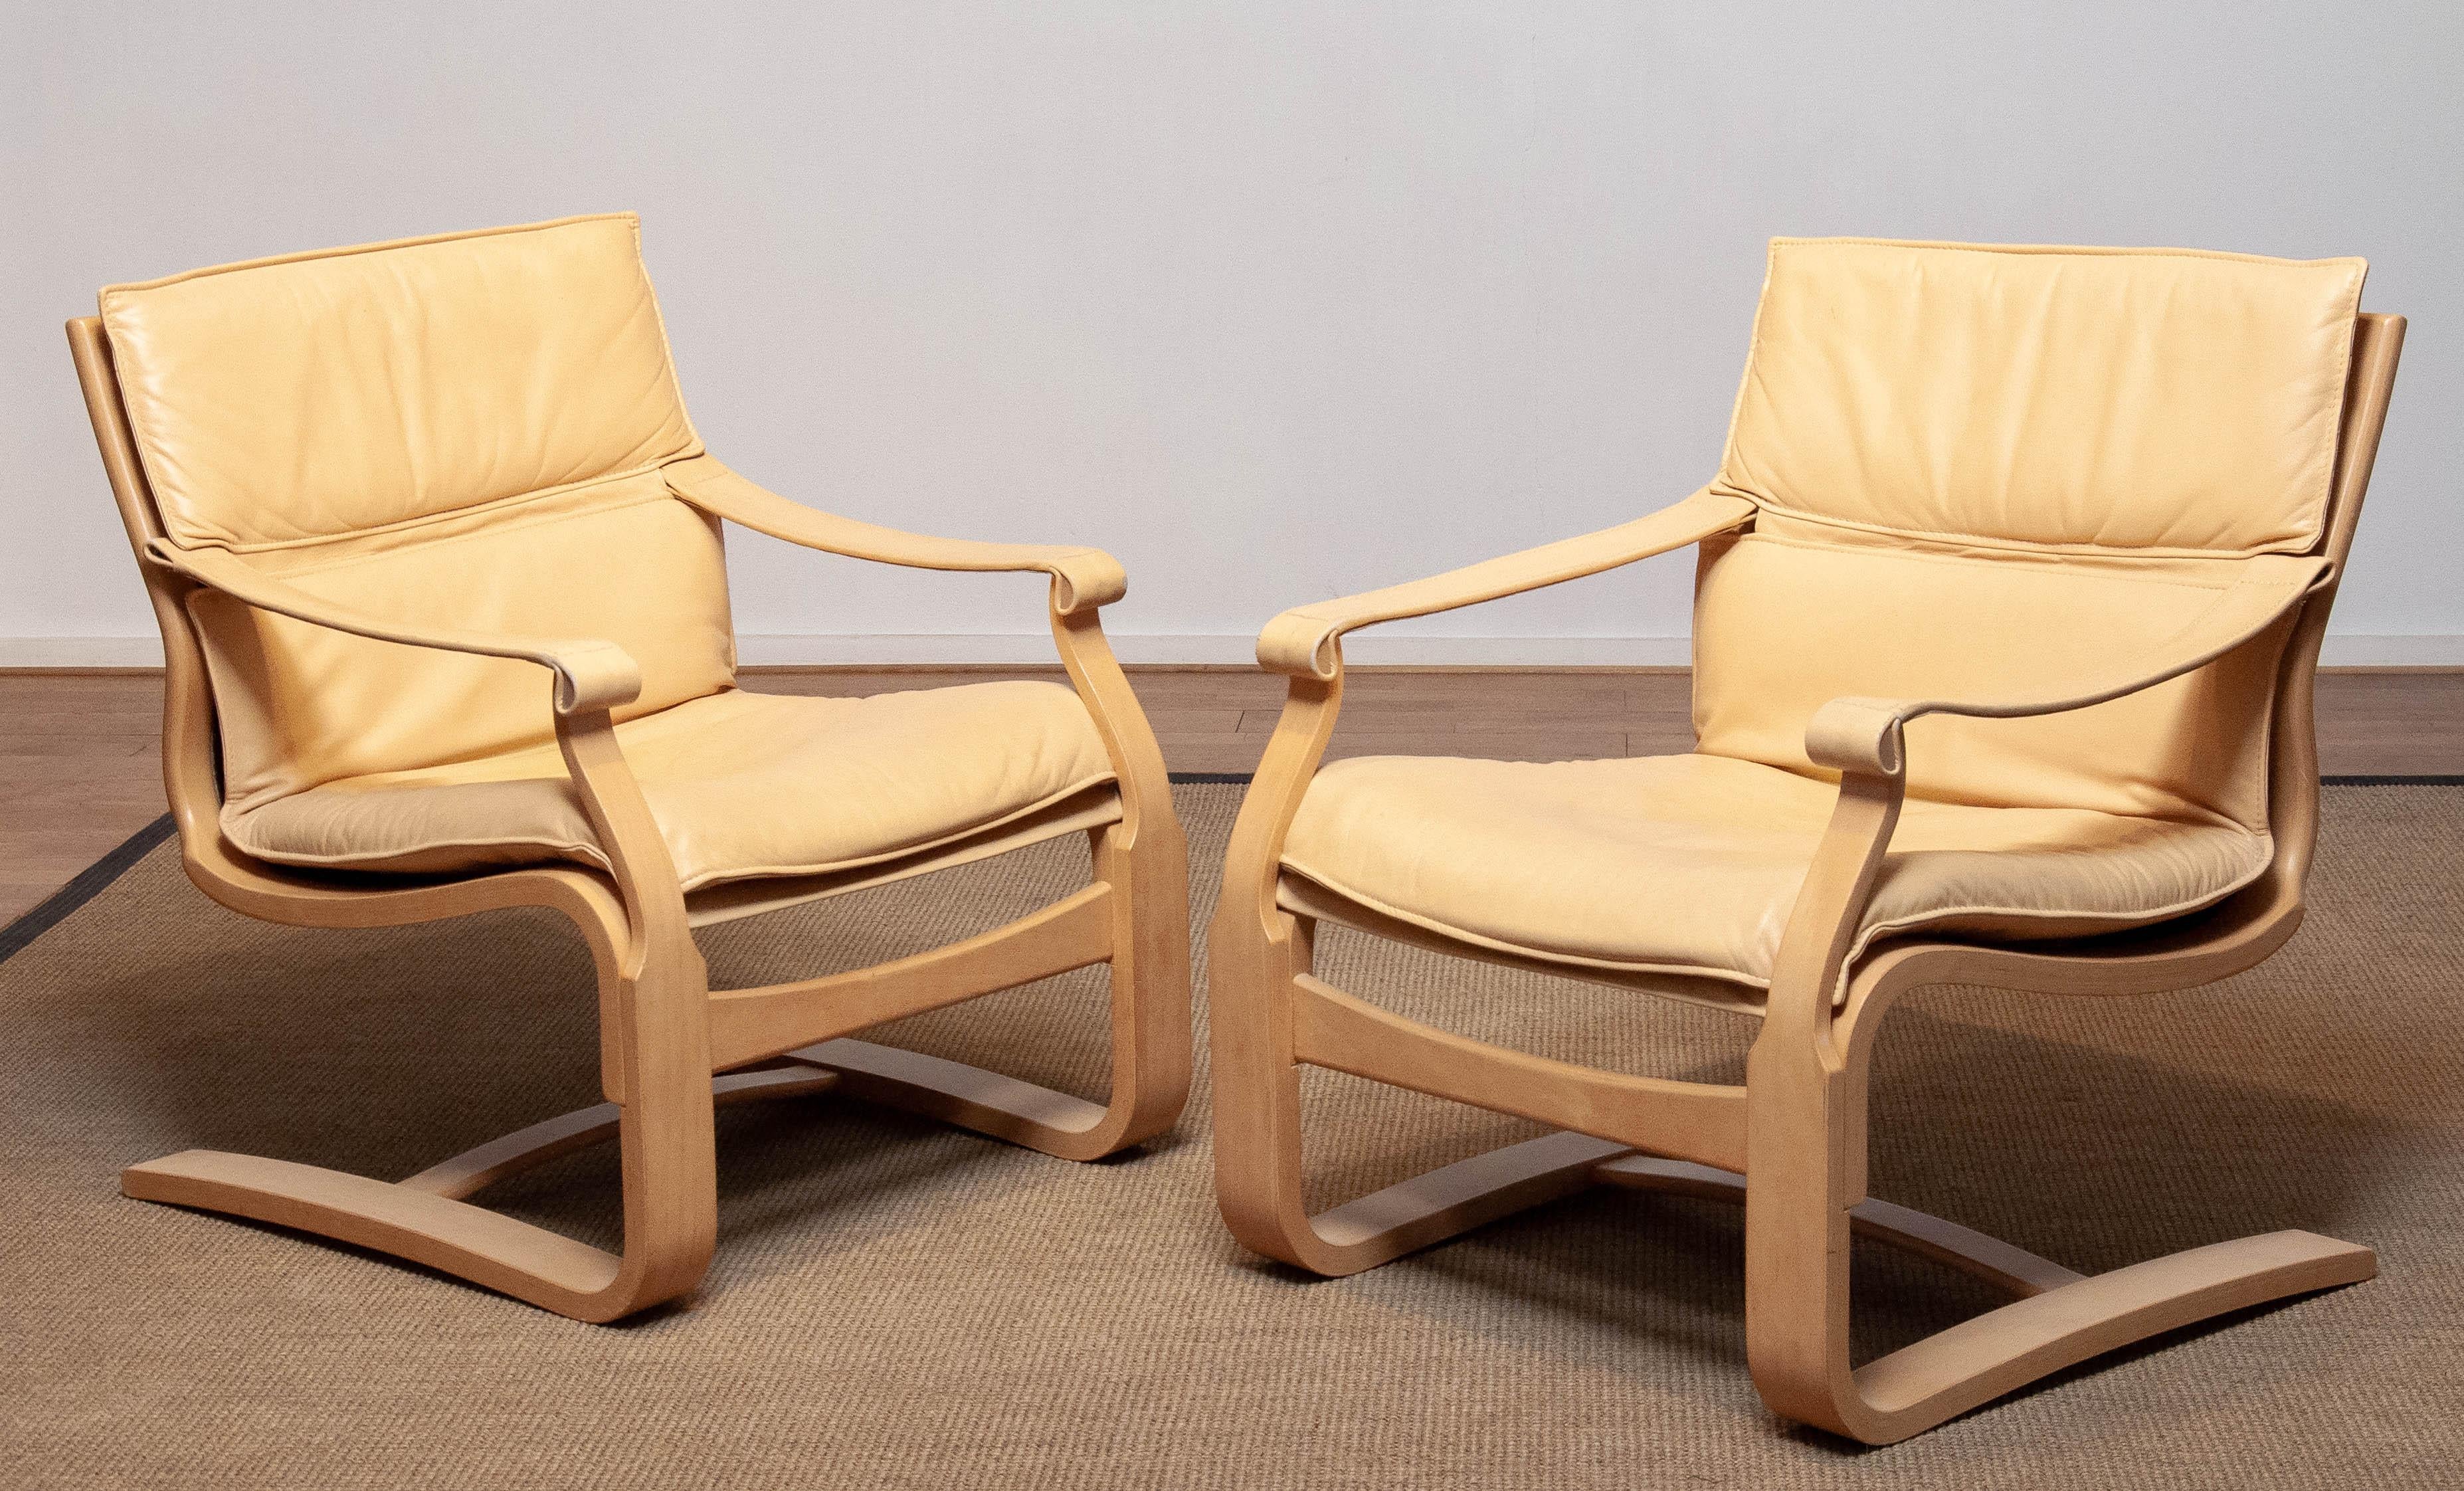 Zwei Sessel aus Bugholz der skandinavischen Moderne, entworfen von Ake Fribytter und hergestellt von Nelo in Schweden in den 1970er Jahren. Beide sind mit beigem / cremefarbenem Leder gepolstert und insgesamt in einem guten und sehr komfortablen